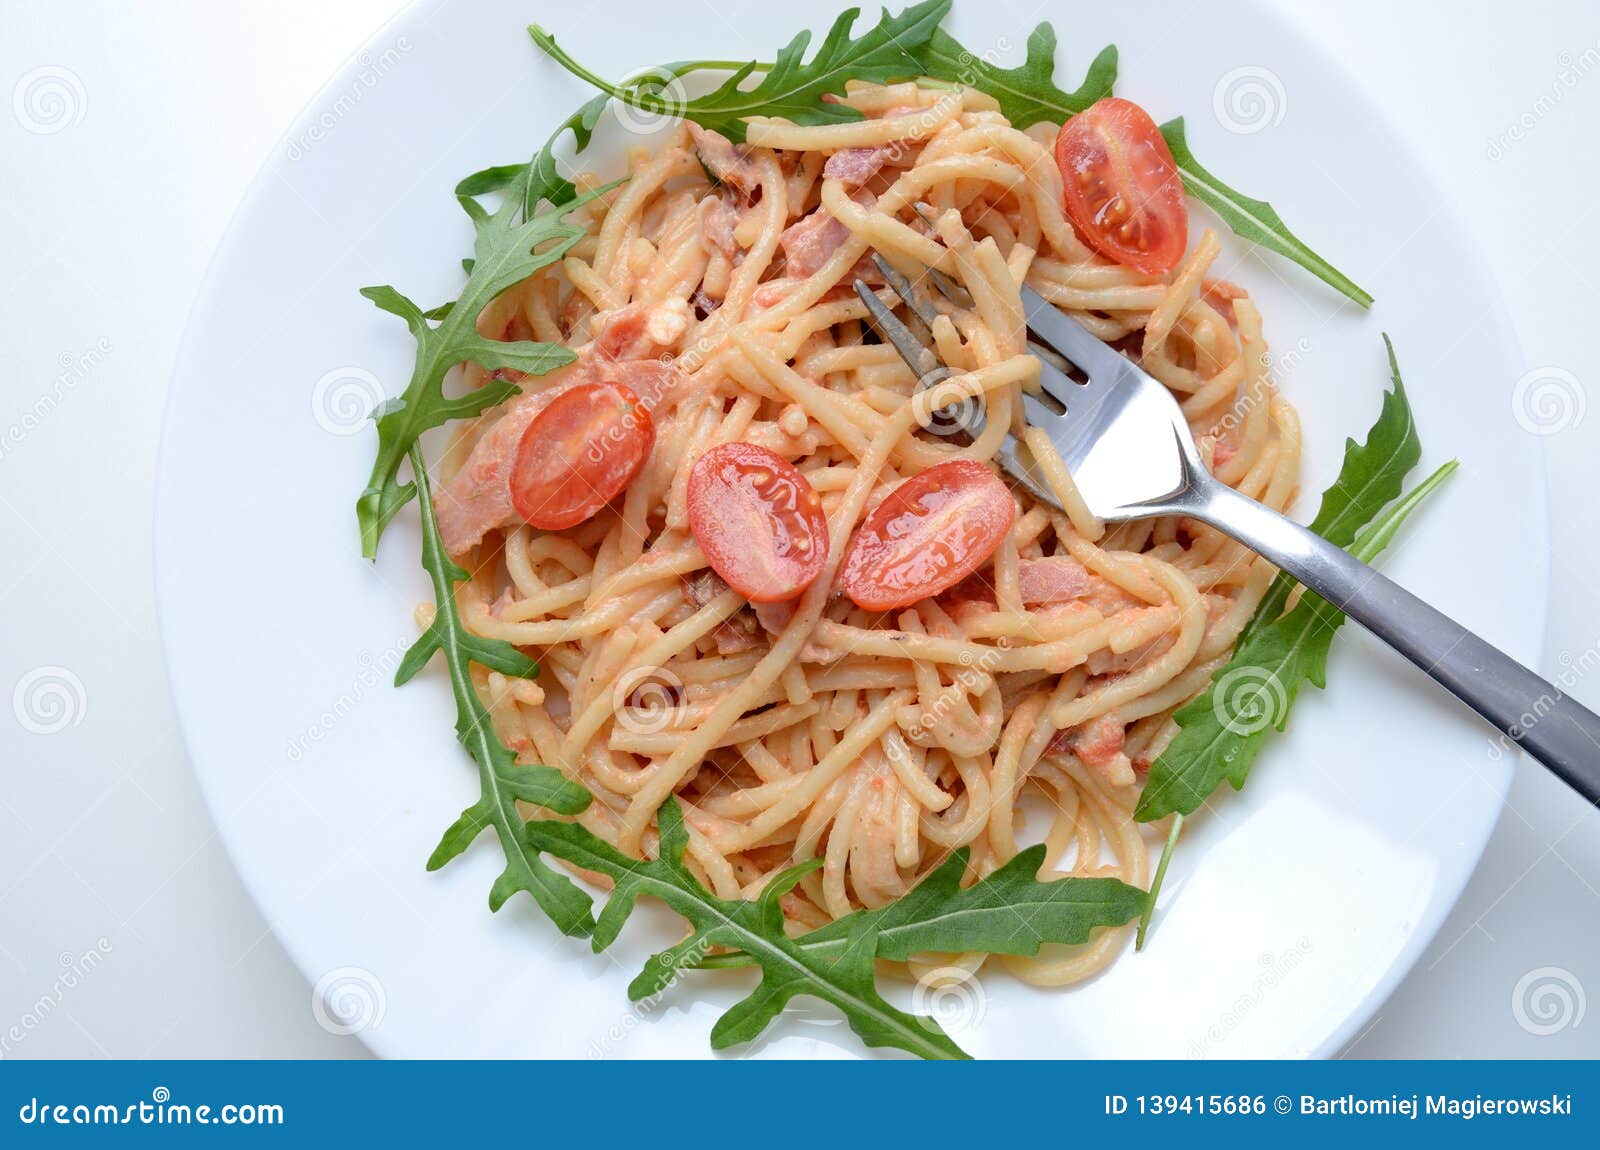 spaghetti with ham and argula